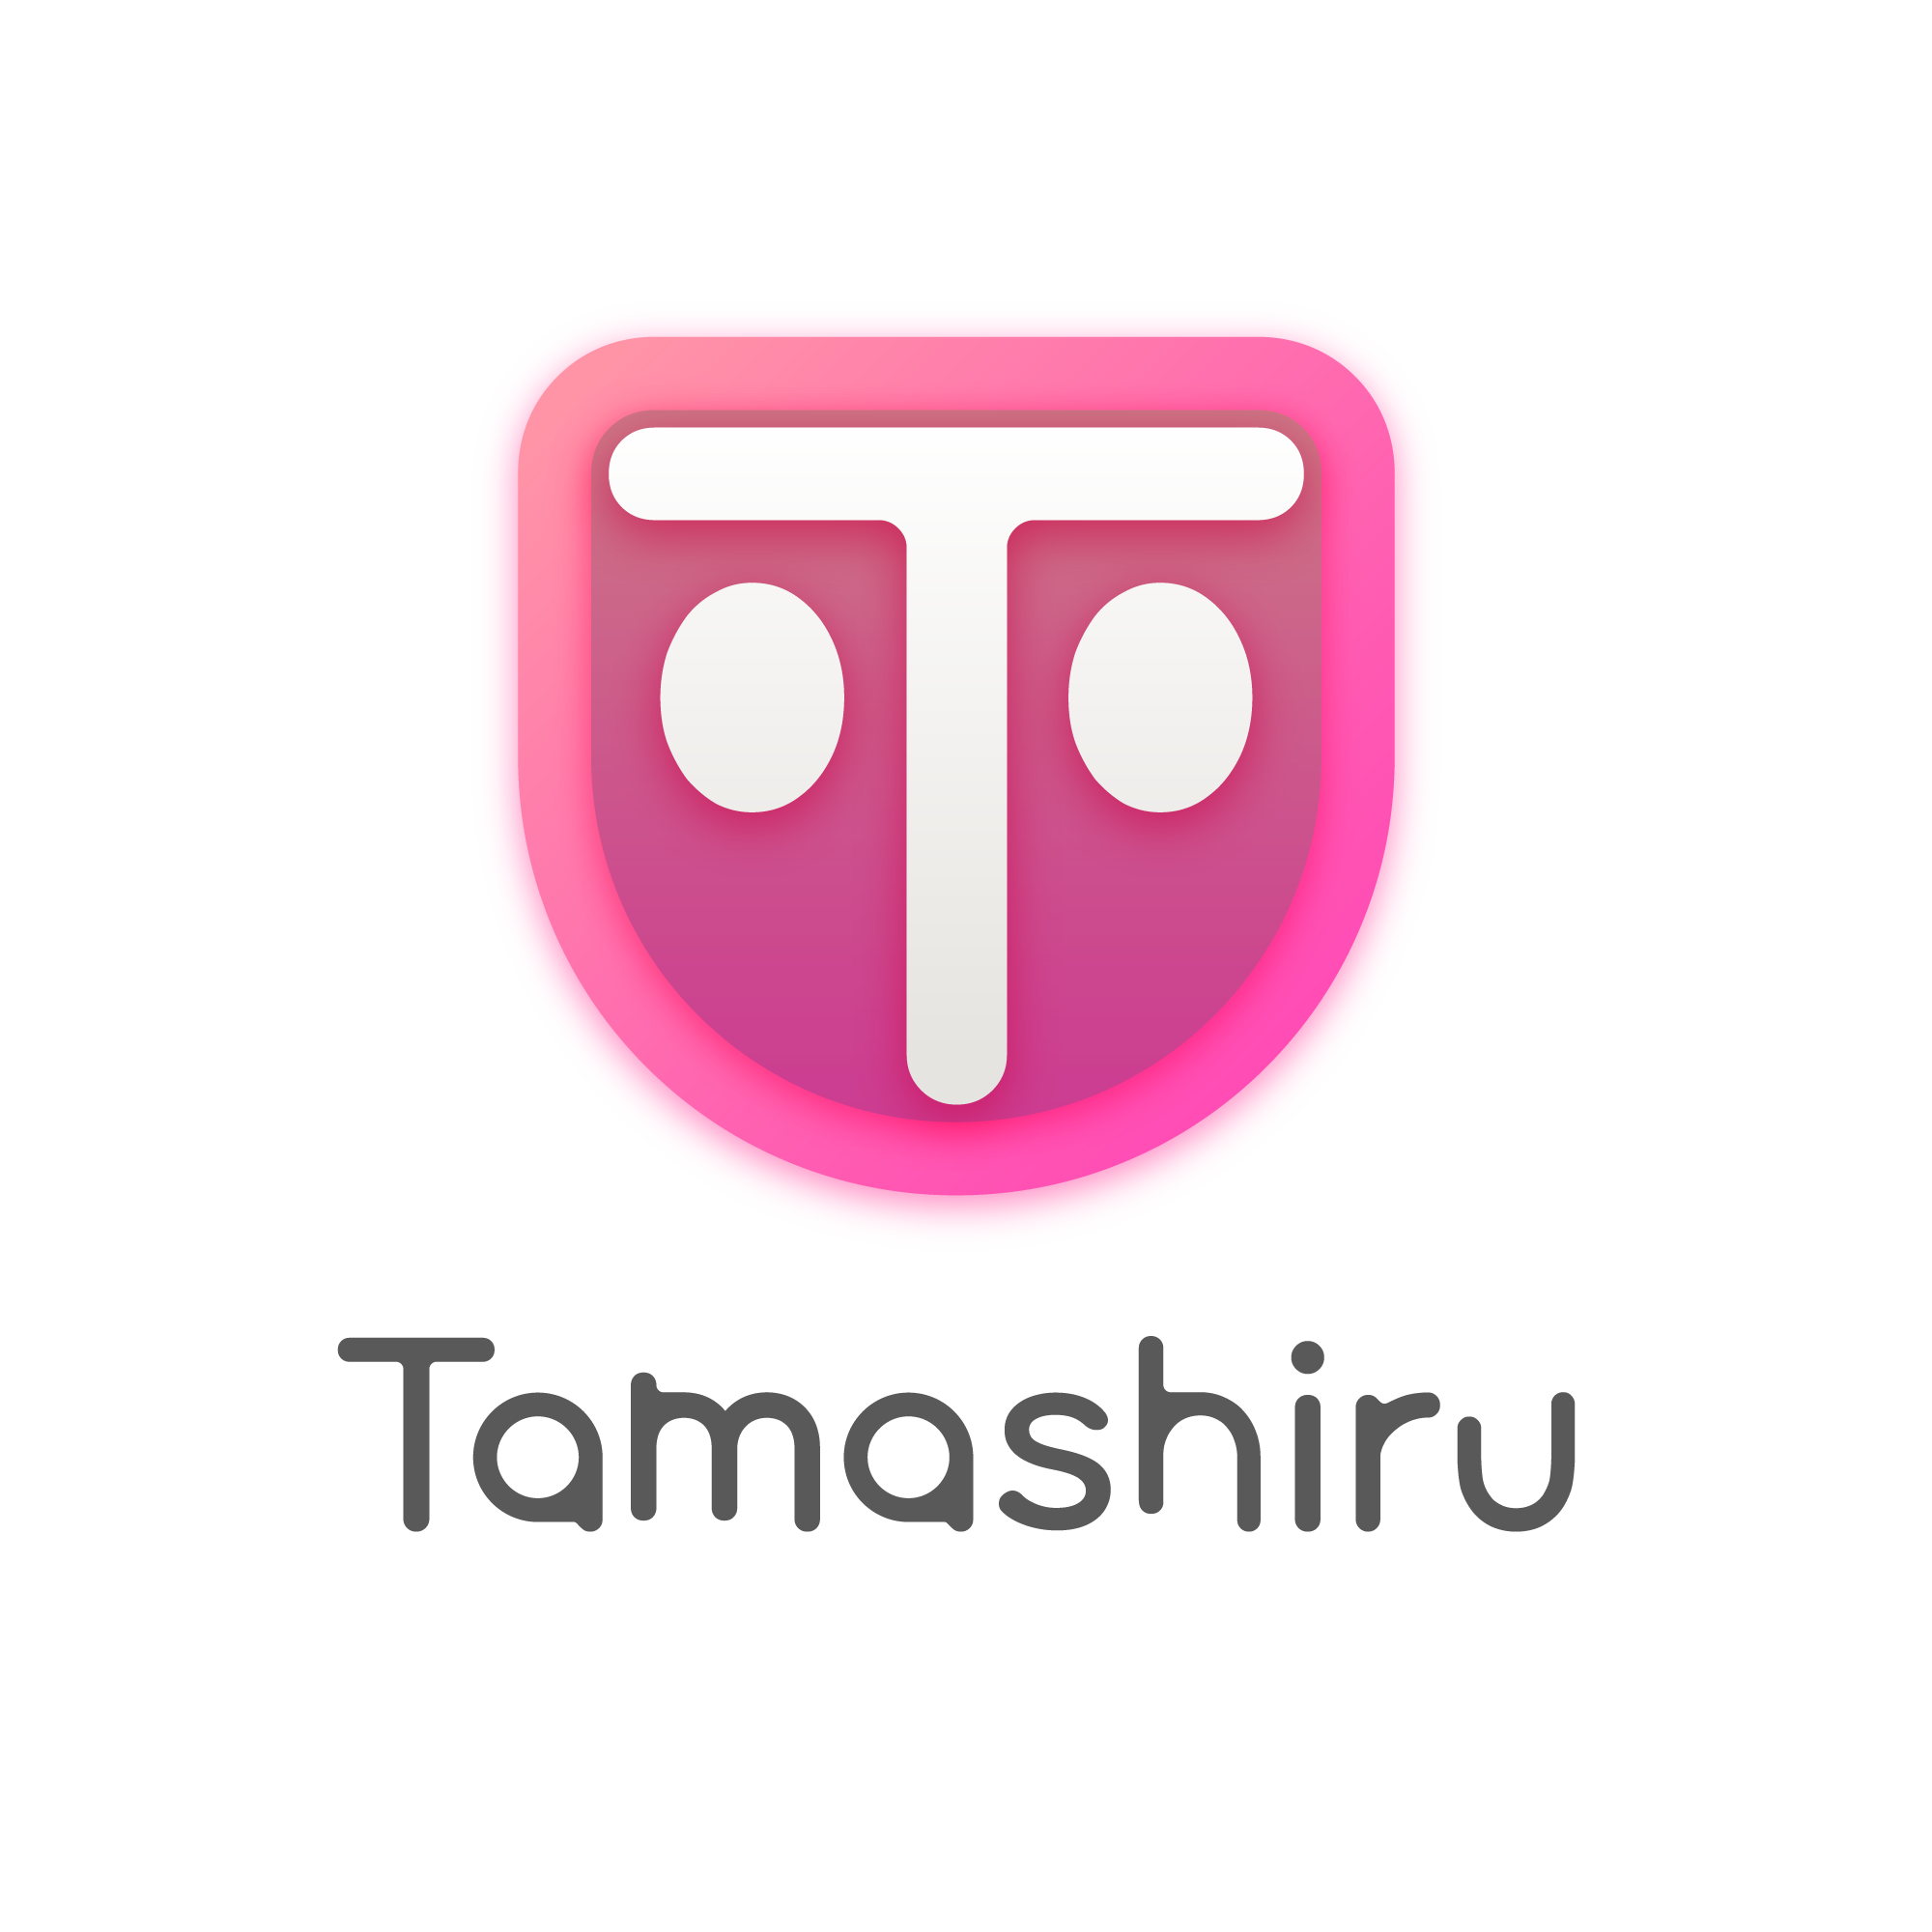 Tamashiru